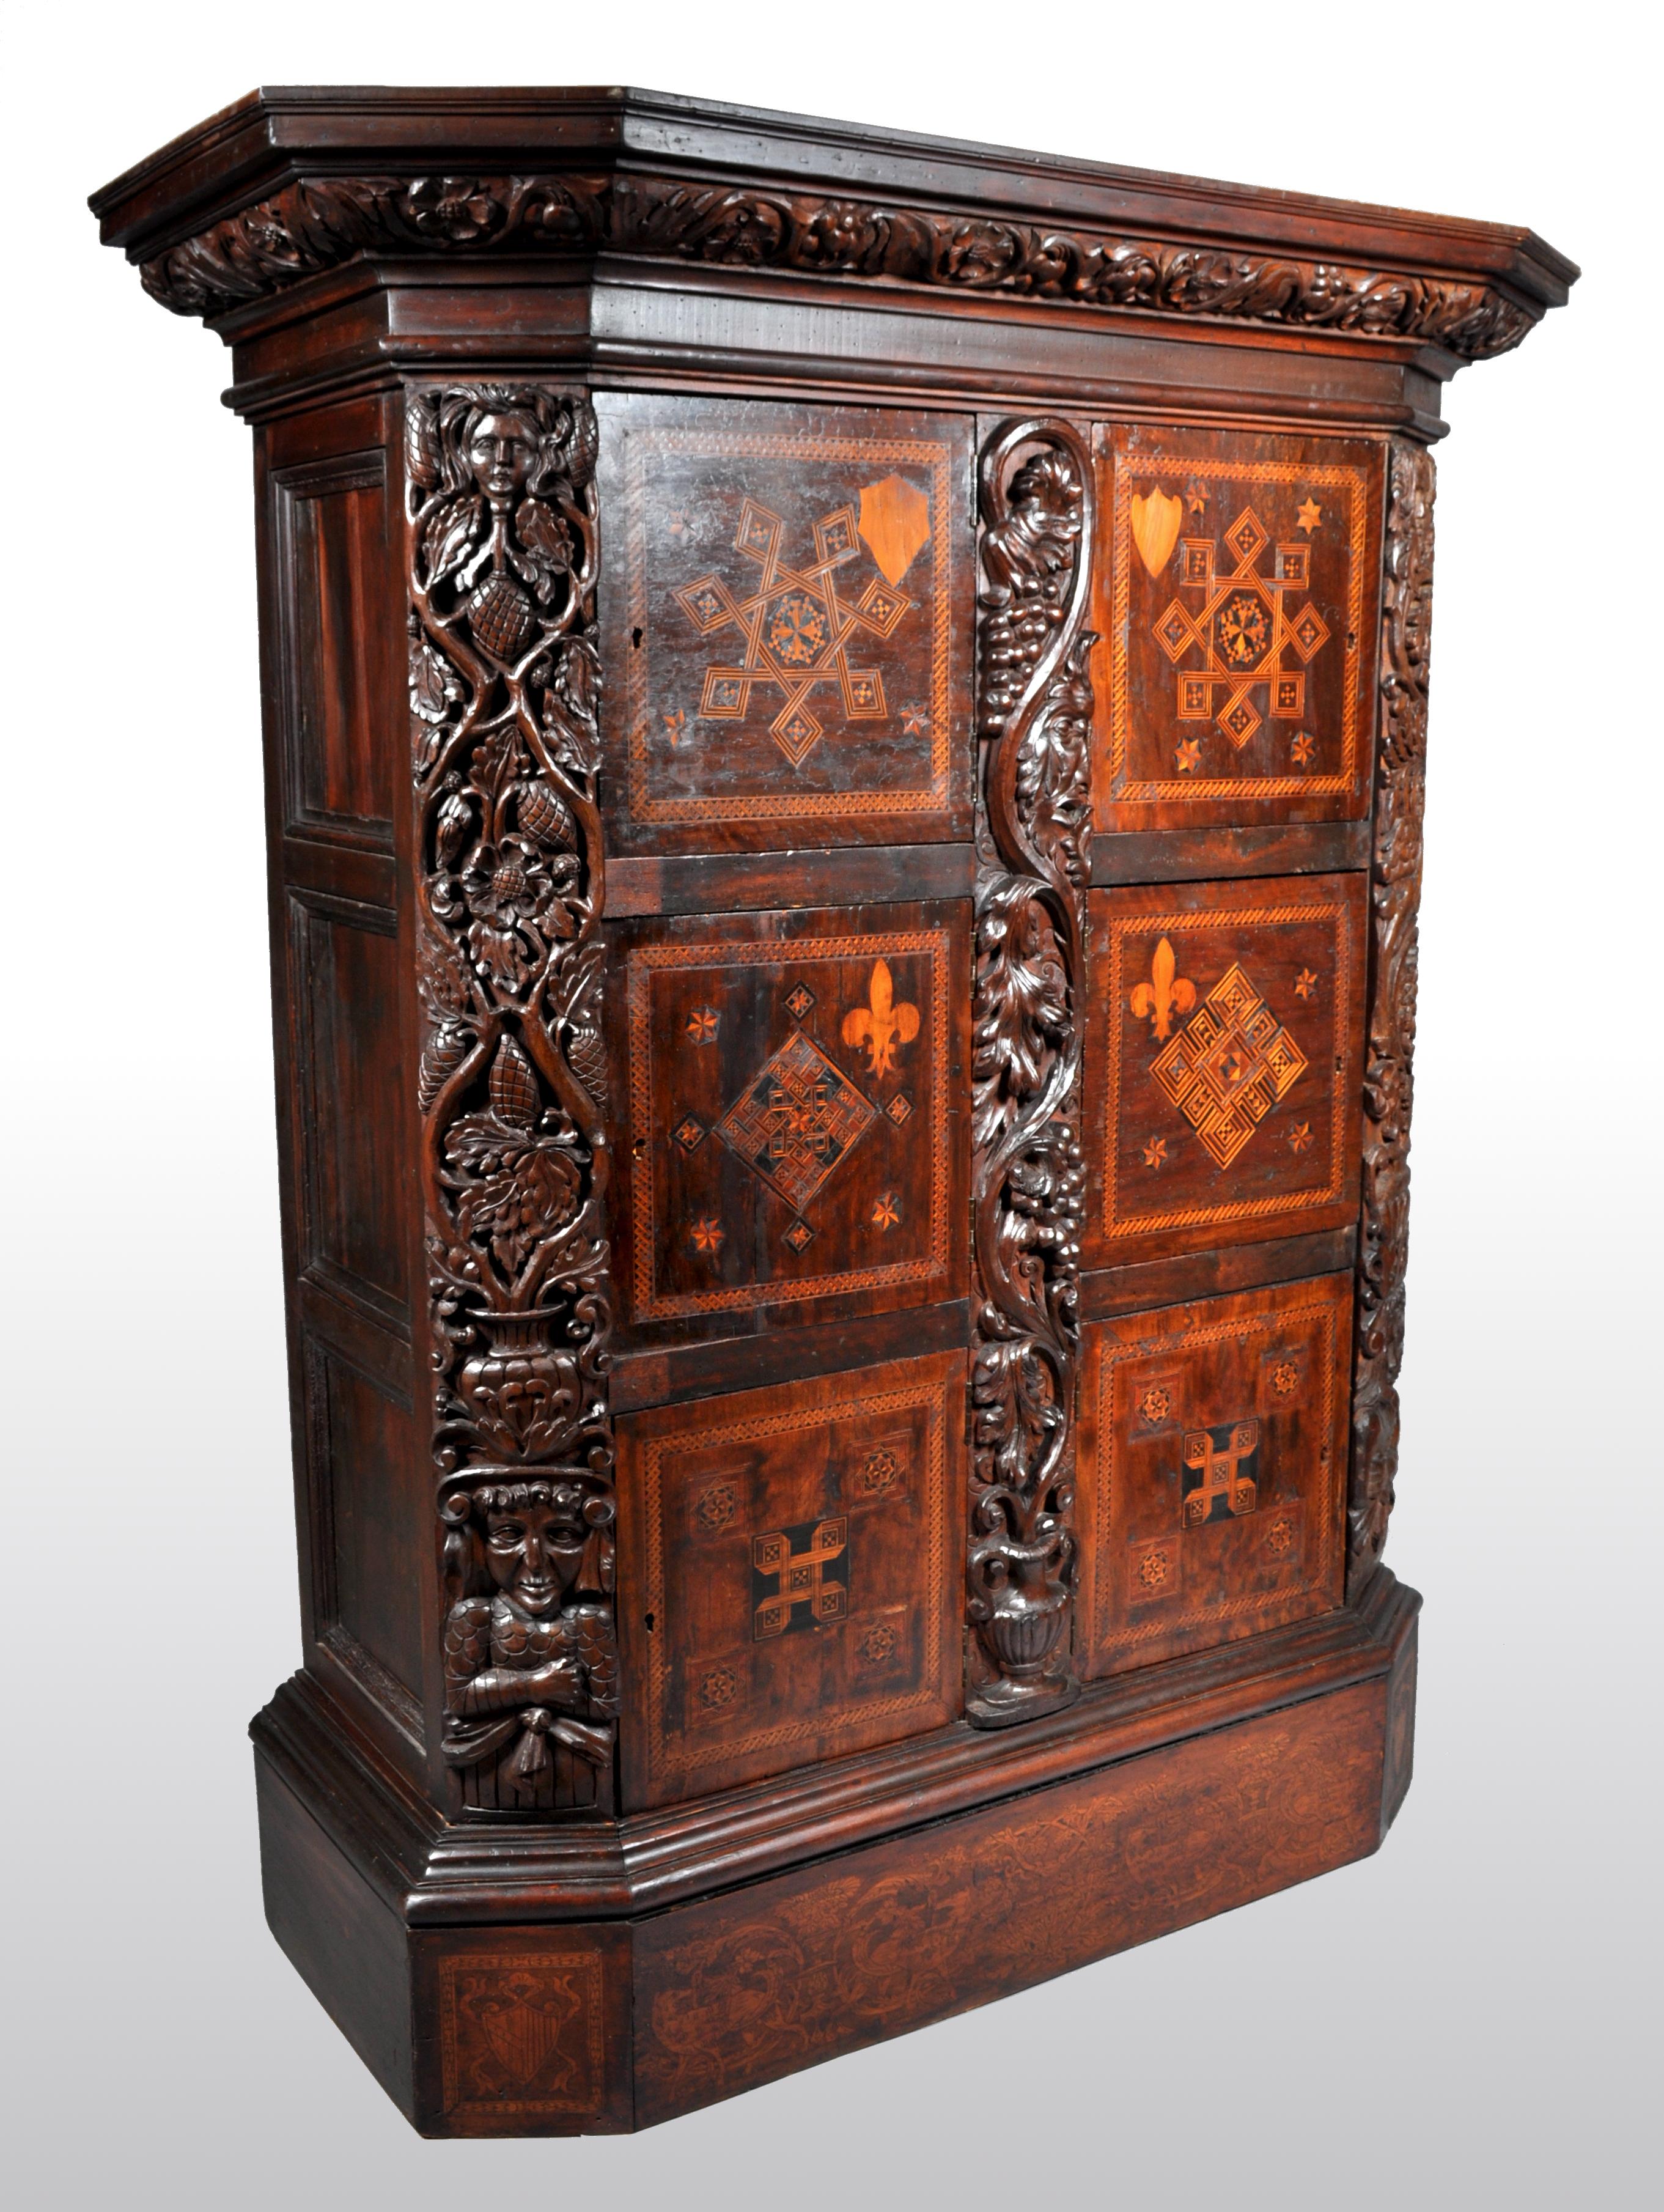 Ancienne armoire à manuscrits royale flamande / hollandaise en marqueterie de noyer, vers 1680. Le meuble possède une corniche à gradins avec une frise sculptée de vignes fruitières. Au-dessous se trouvent six portes finement incrustées de motifs